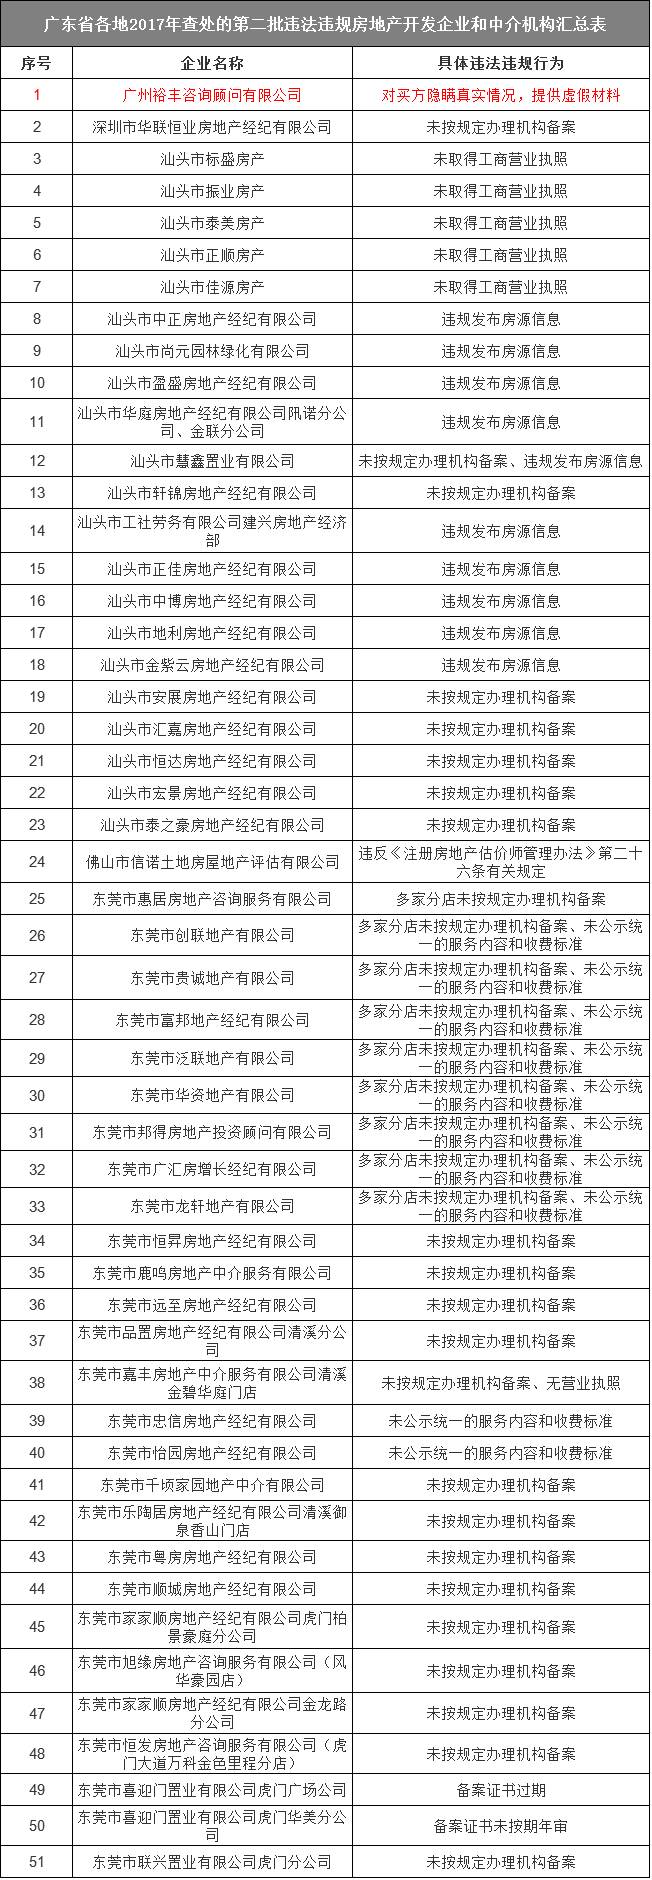 广东省住建厅公布51家违规企业